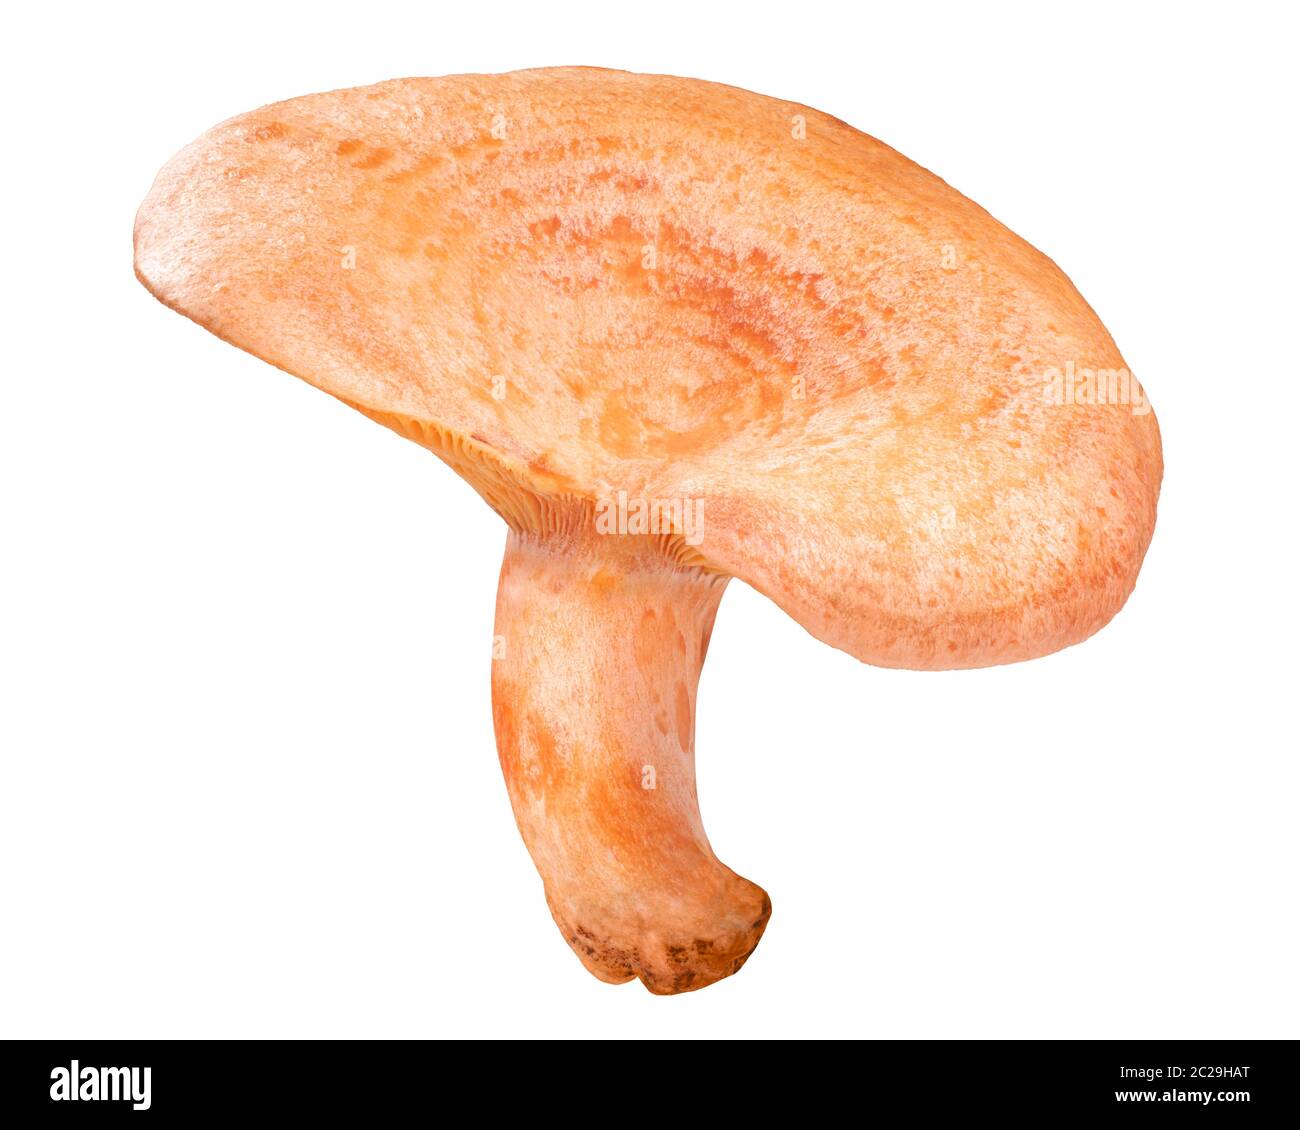 Saffron milk cap or red pine mushroom (Lactarius deliciosus fruit body), isolated Stock Photo